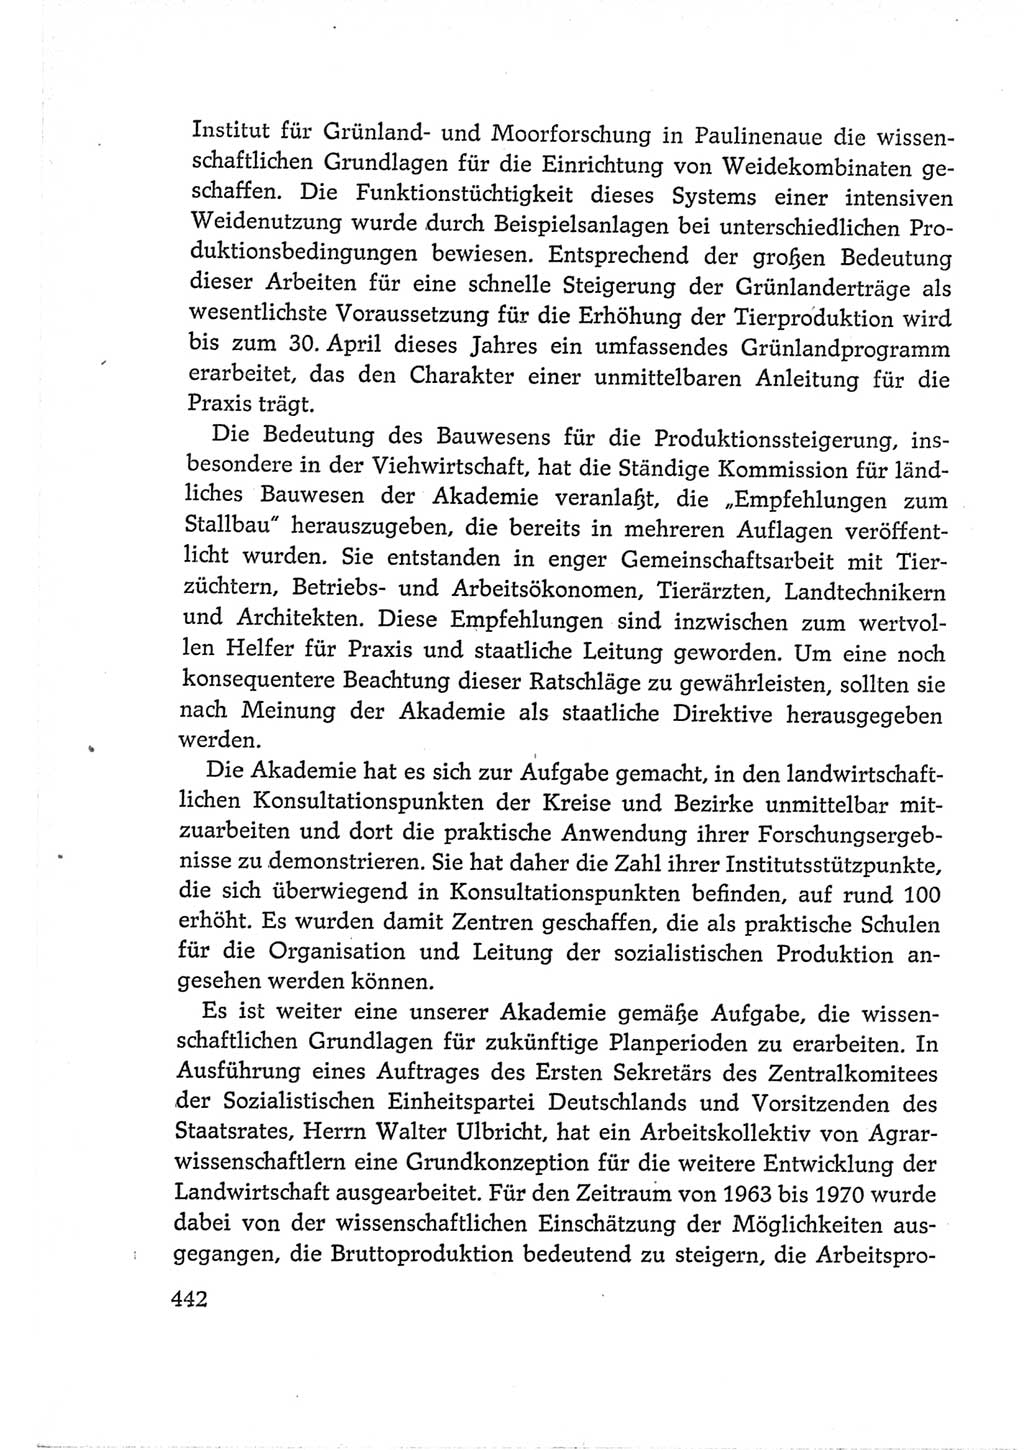 Protokoll der Verhandlungen des Ⅵ. Parteitages der Sozialistischen Einheitspartei Deutschlands (SED) [Deutsche Demokratische Republik (DDR)] 1963, Band Ⅰ, Seite 442 (Prot. Verh. Ⅵ. PT SED DDR 1963, Bd. Ⅰ, S. 442)